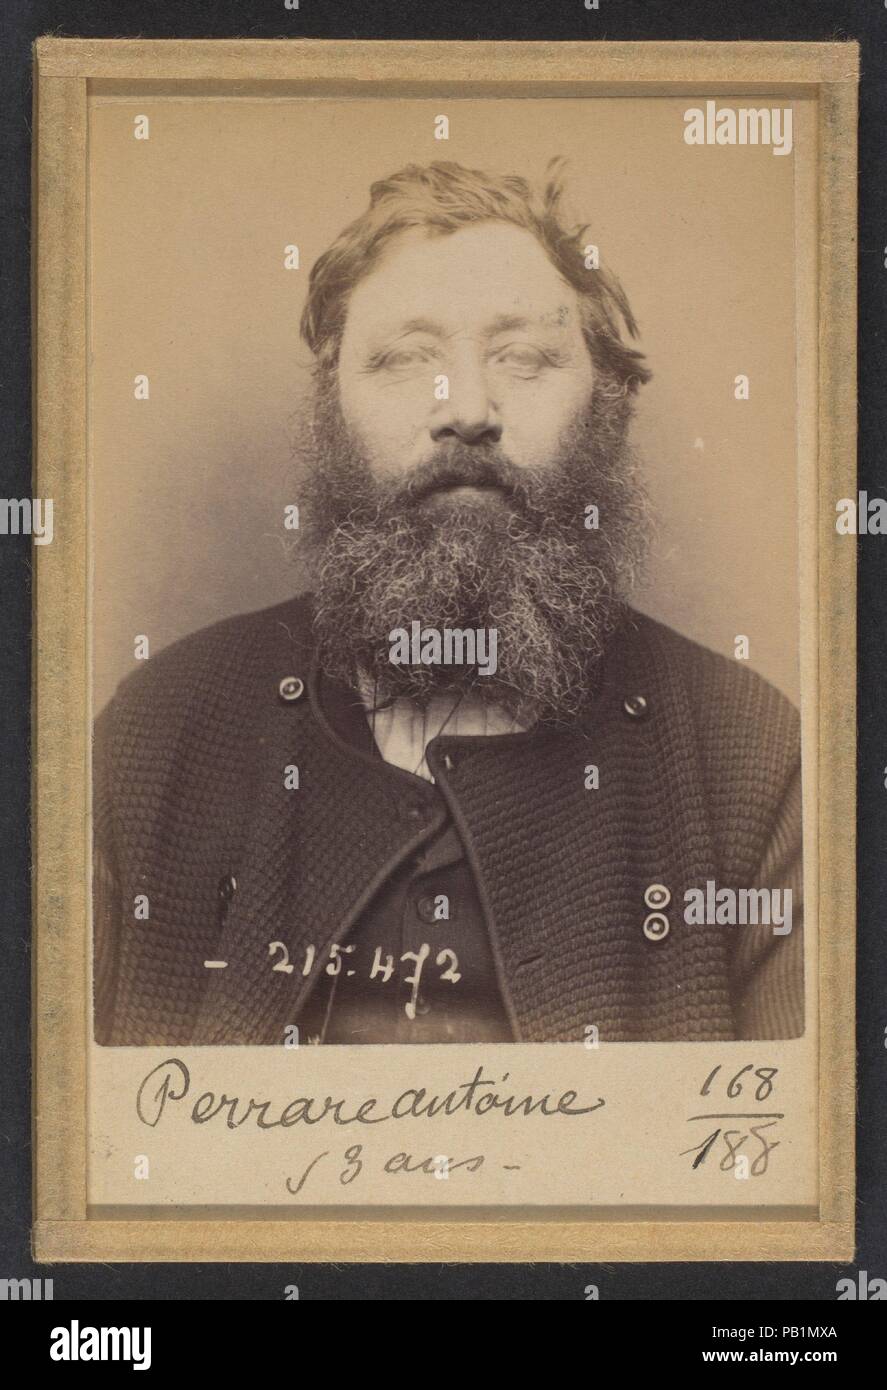 Perrare. Antoine. 53 ans, né à St Diaur (Rhône). Mécanicien. Anarchiste.  10/3/94. Artist: Alphonse Bertillon (French, 1853-1914). Dimensions: 10.5 x  7 x 0.5 cm (4 1/8 x 2 3/4 x 3/16 in.)